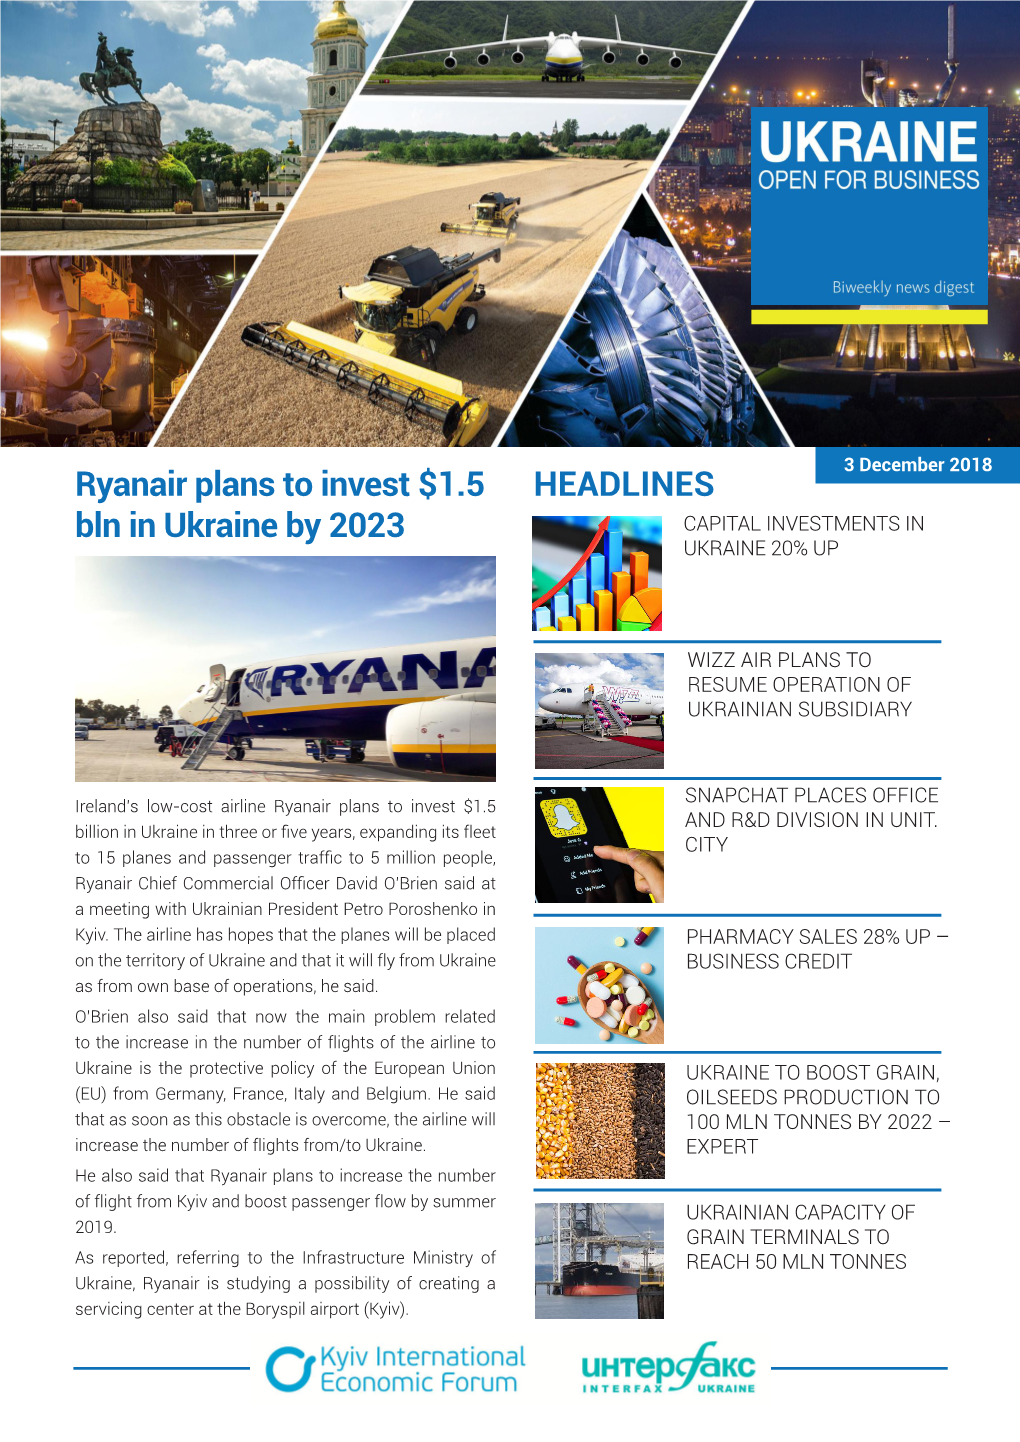 HEADLINES Ryanair Plans to Invest $1.5 Bln in Ukraine by 2023